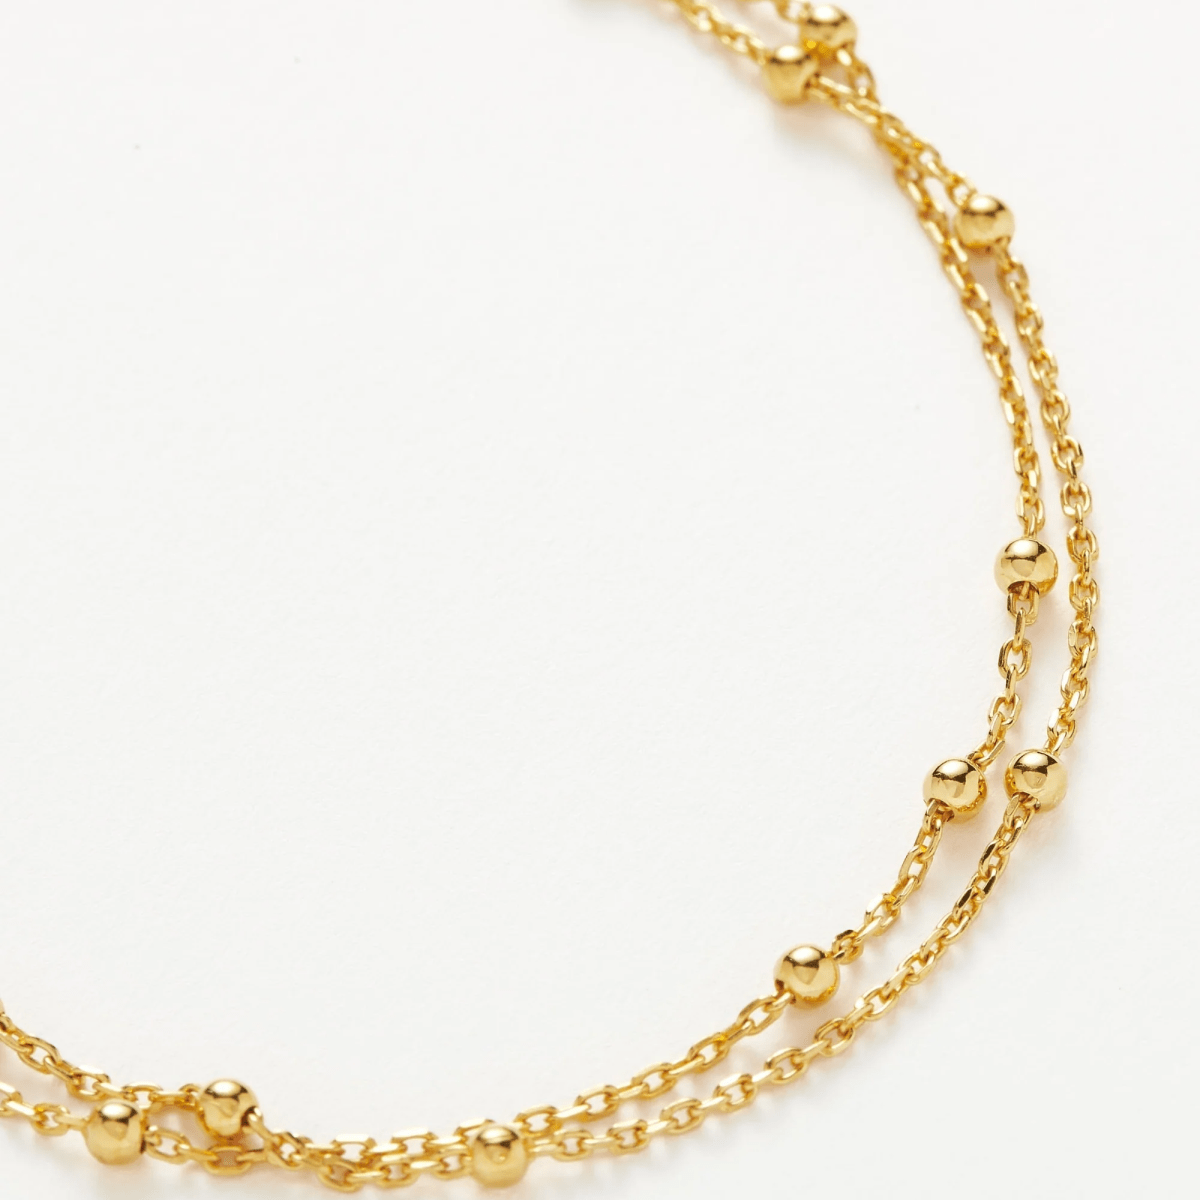 18K Gold Vermeil Double Chain Bracelet